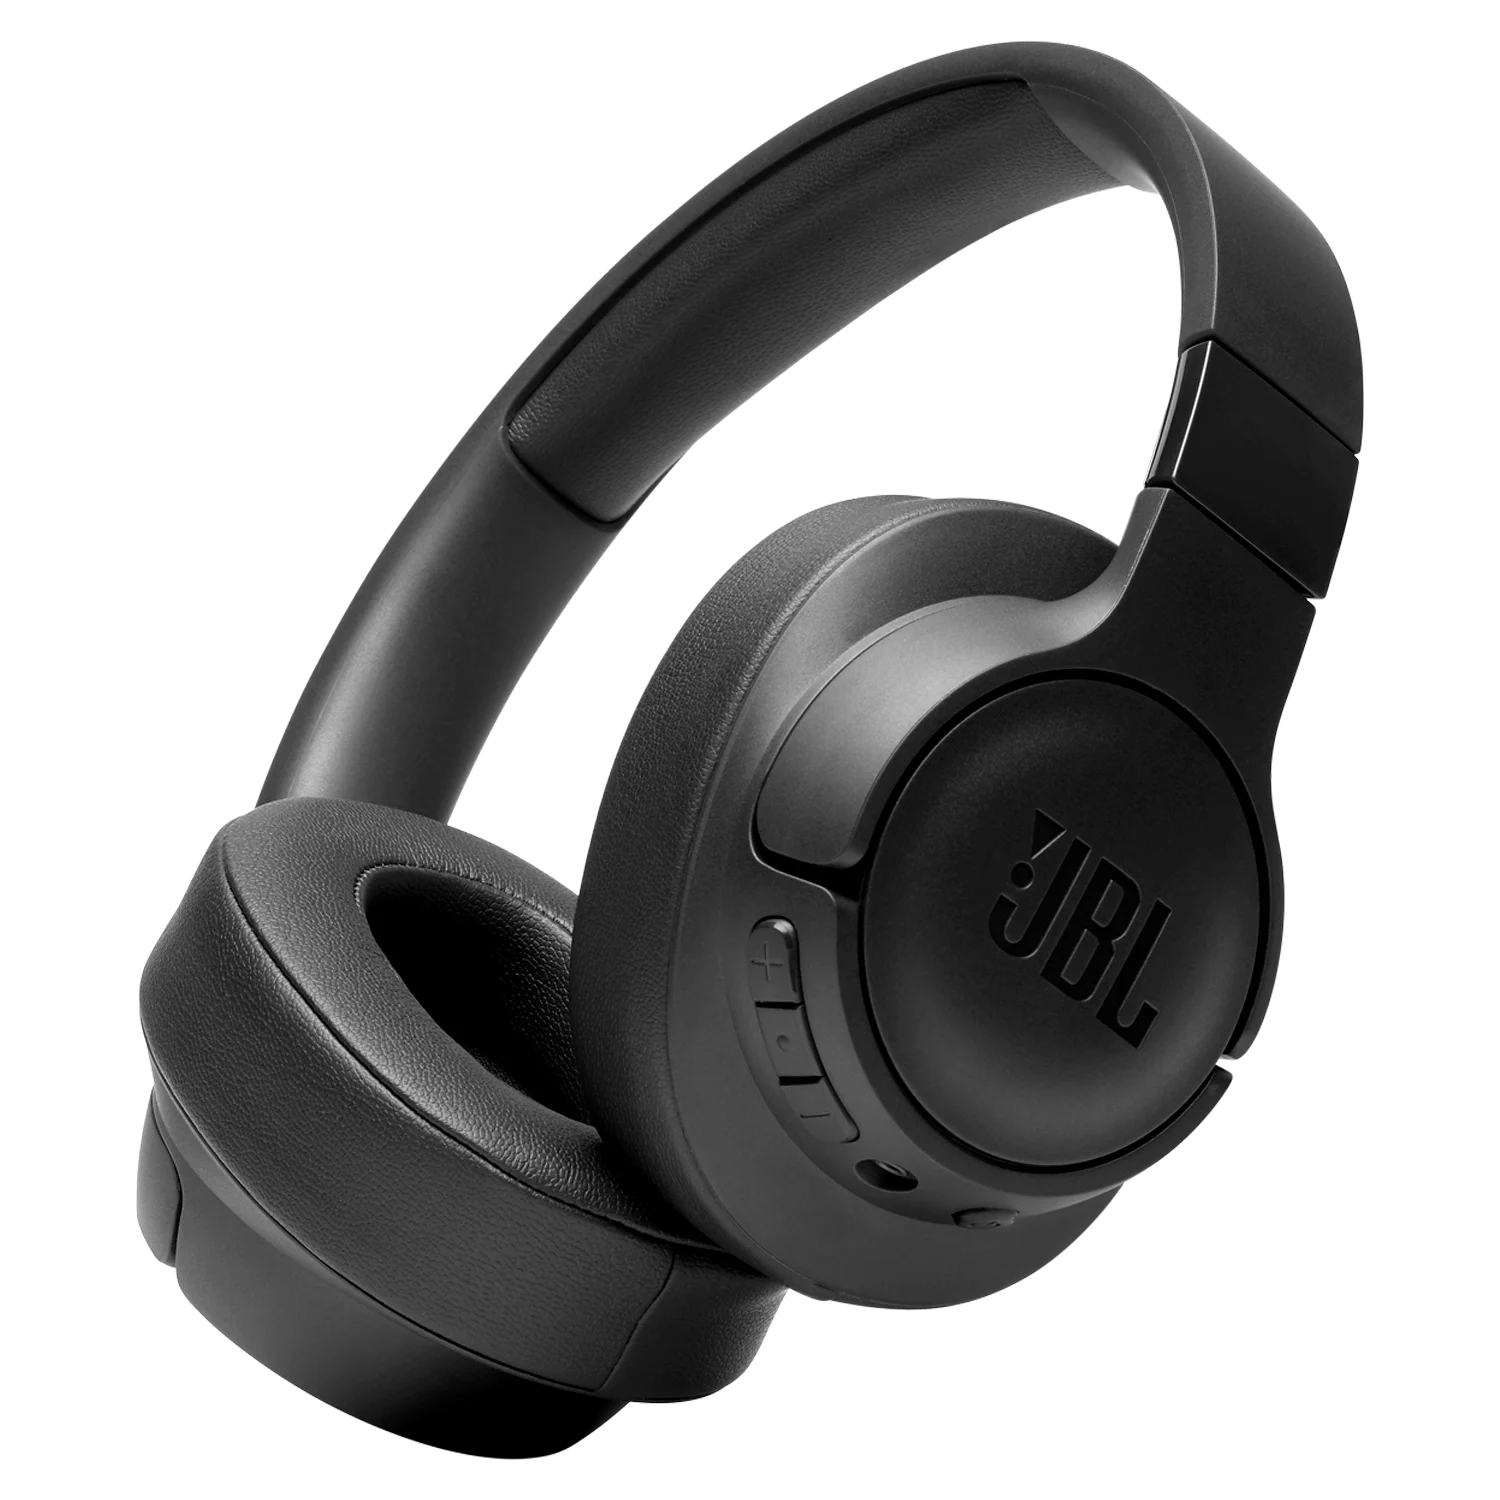 Headset JBL Tune 710BT / Bluetooth - Preto